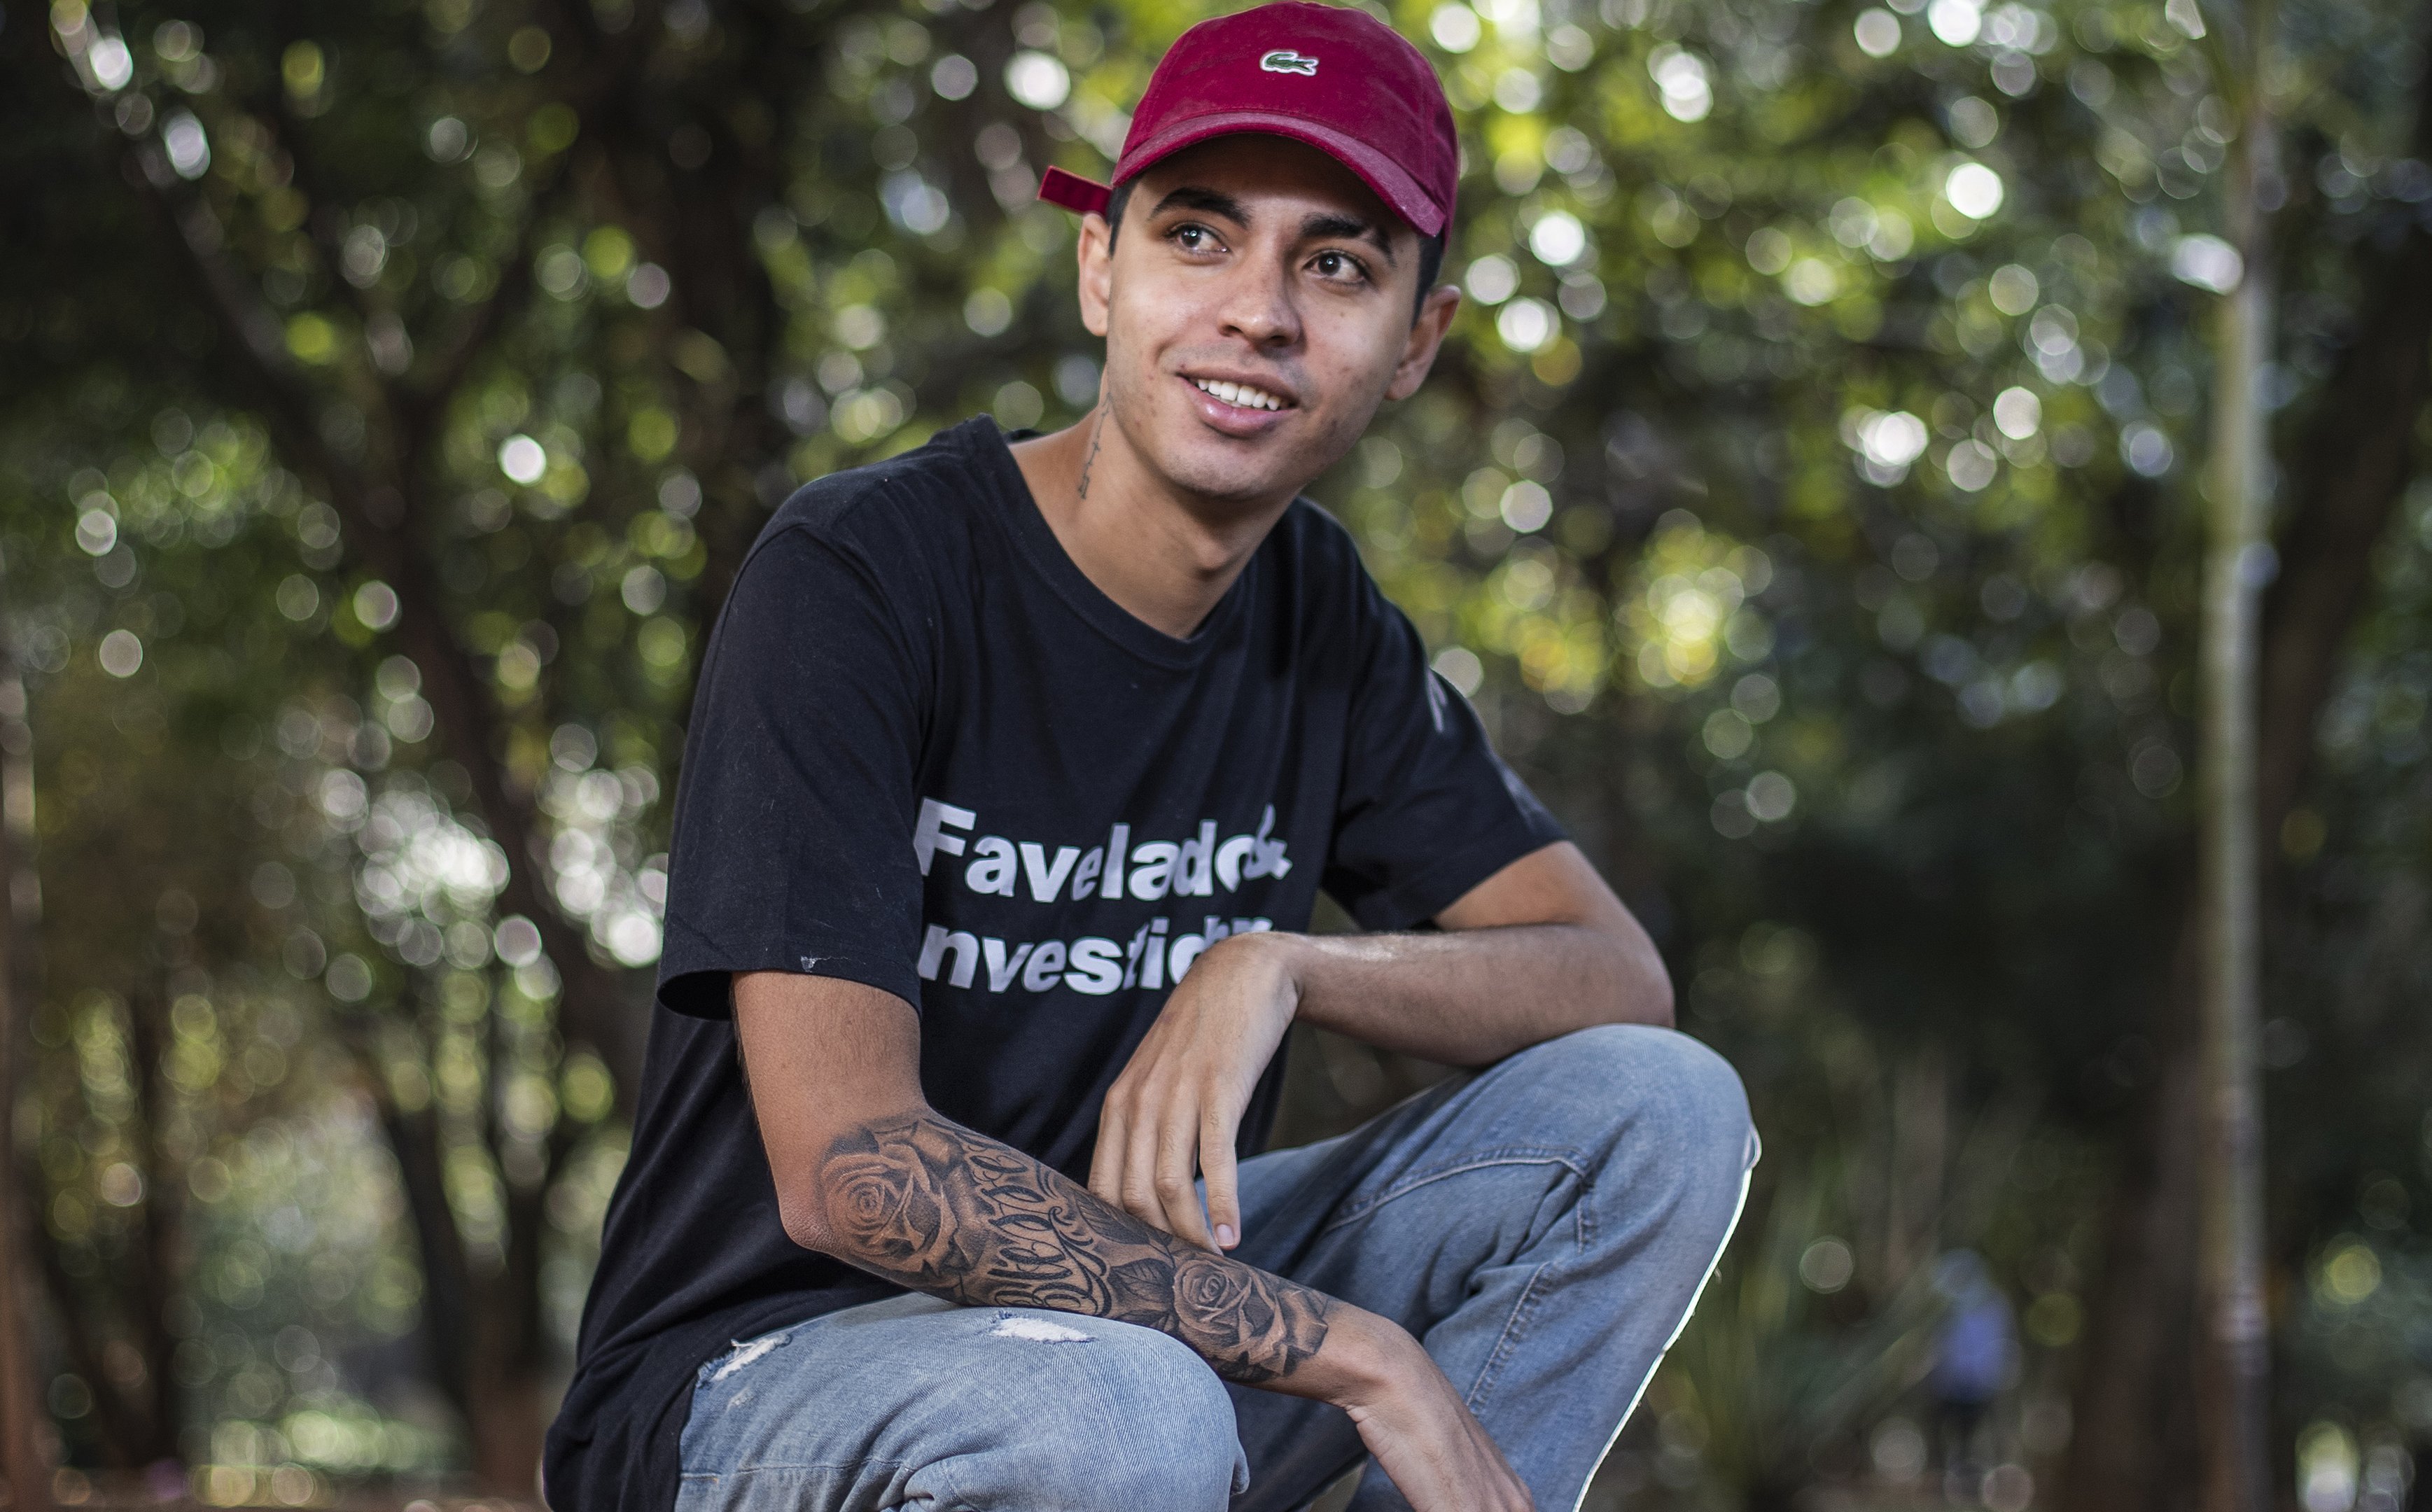 Murilo Duarte, morador da favela que investe na bolsa e tem o canal Favelado Investidor